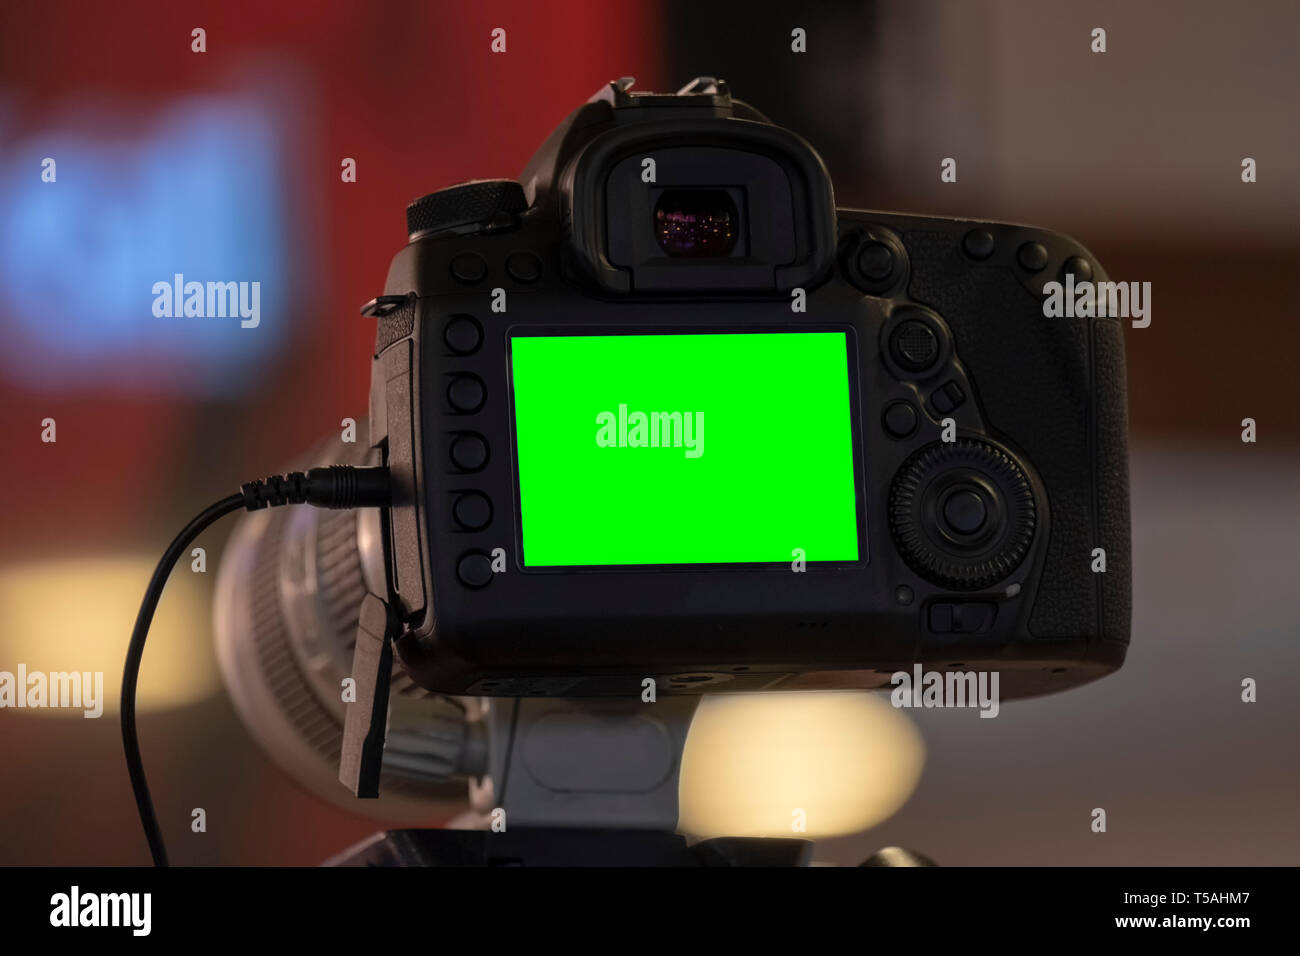 Enregistrement vidéo avec UN appareil photo reflex numérique Banque D'Images